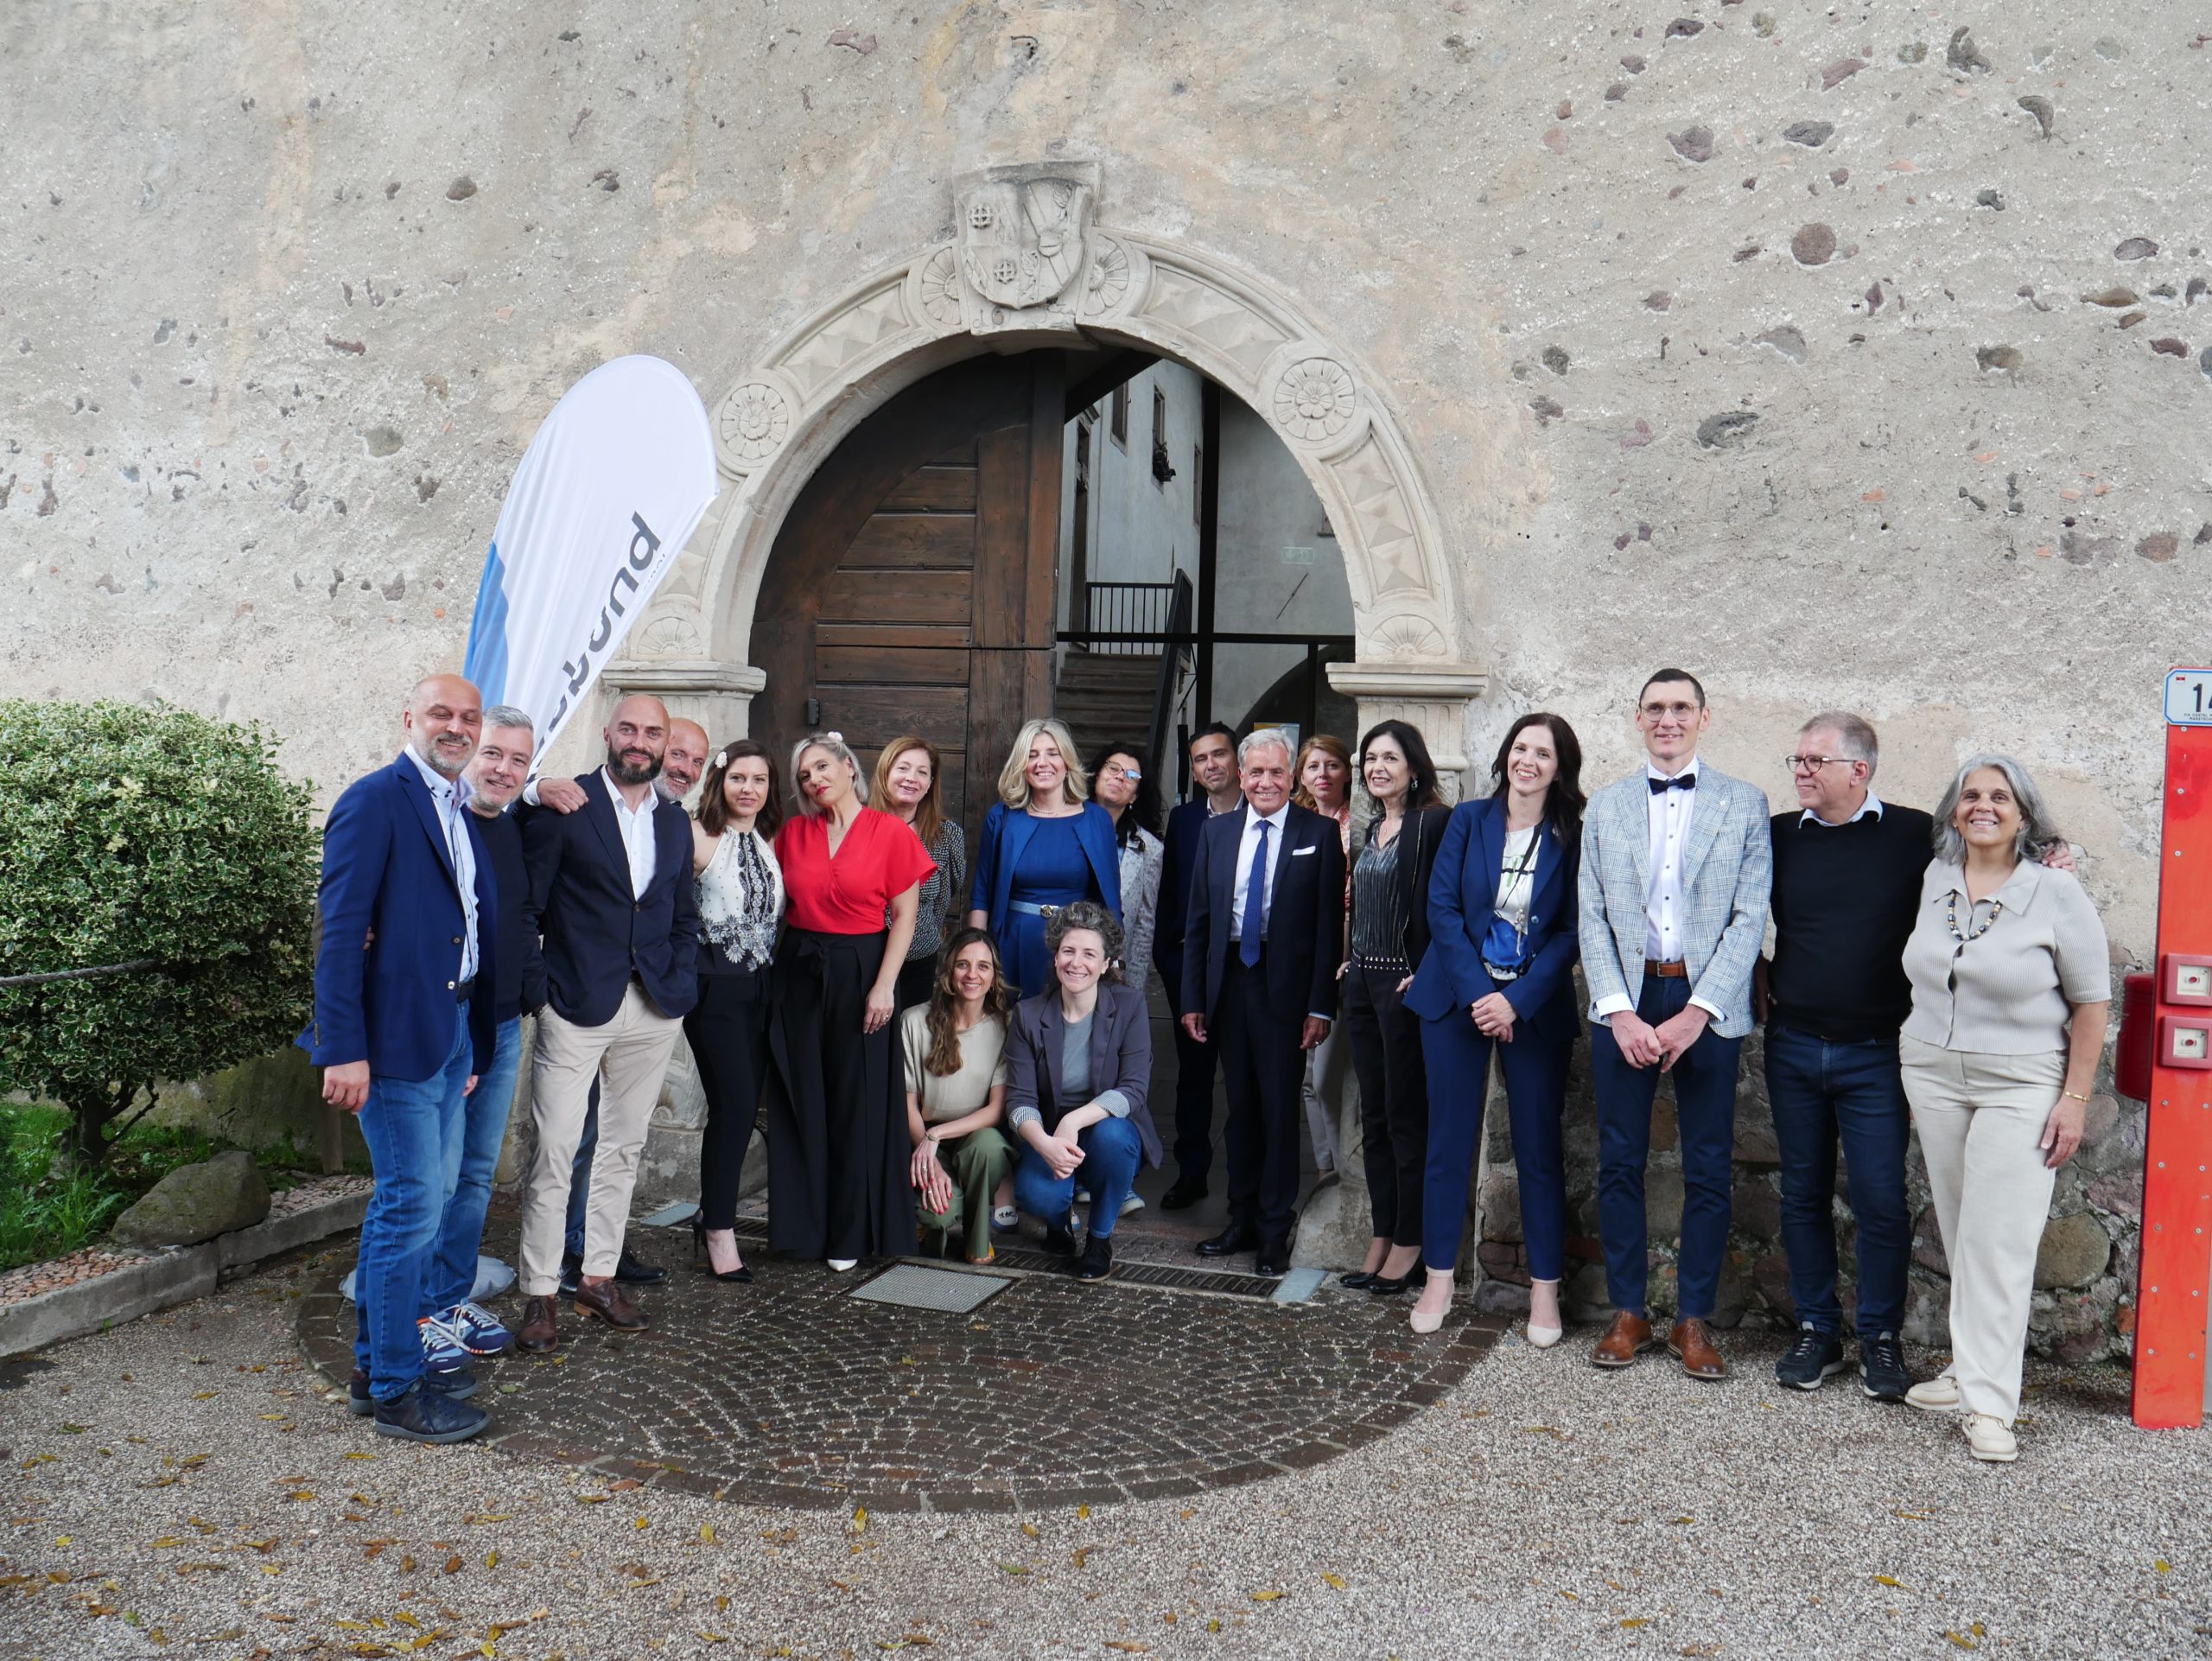 L’assemblea di Coopbund Alto Adige Südtirol è dedicata all’intelligenza generazionale